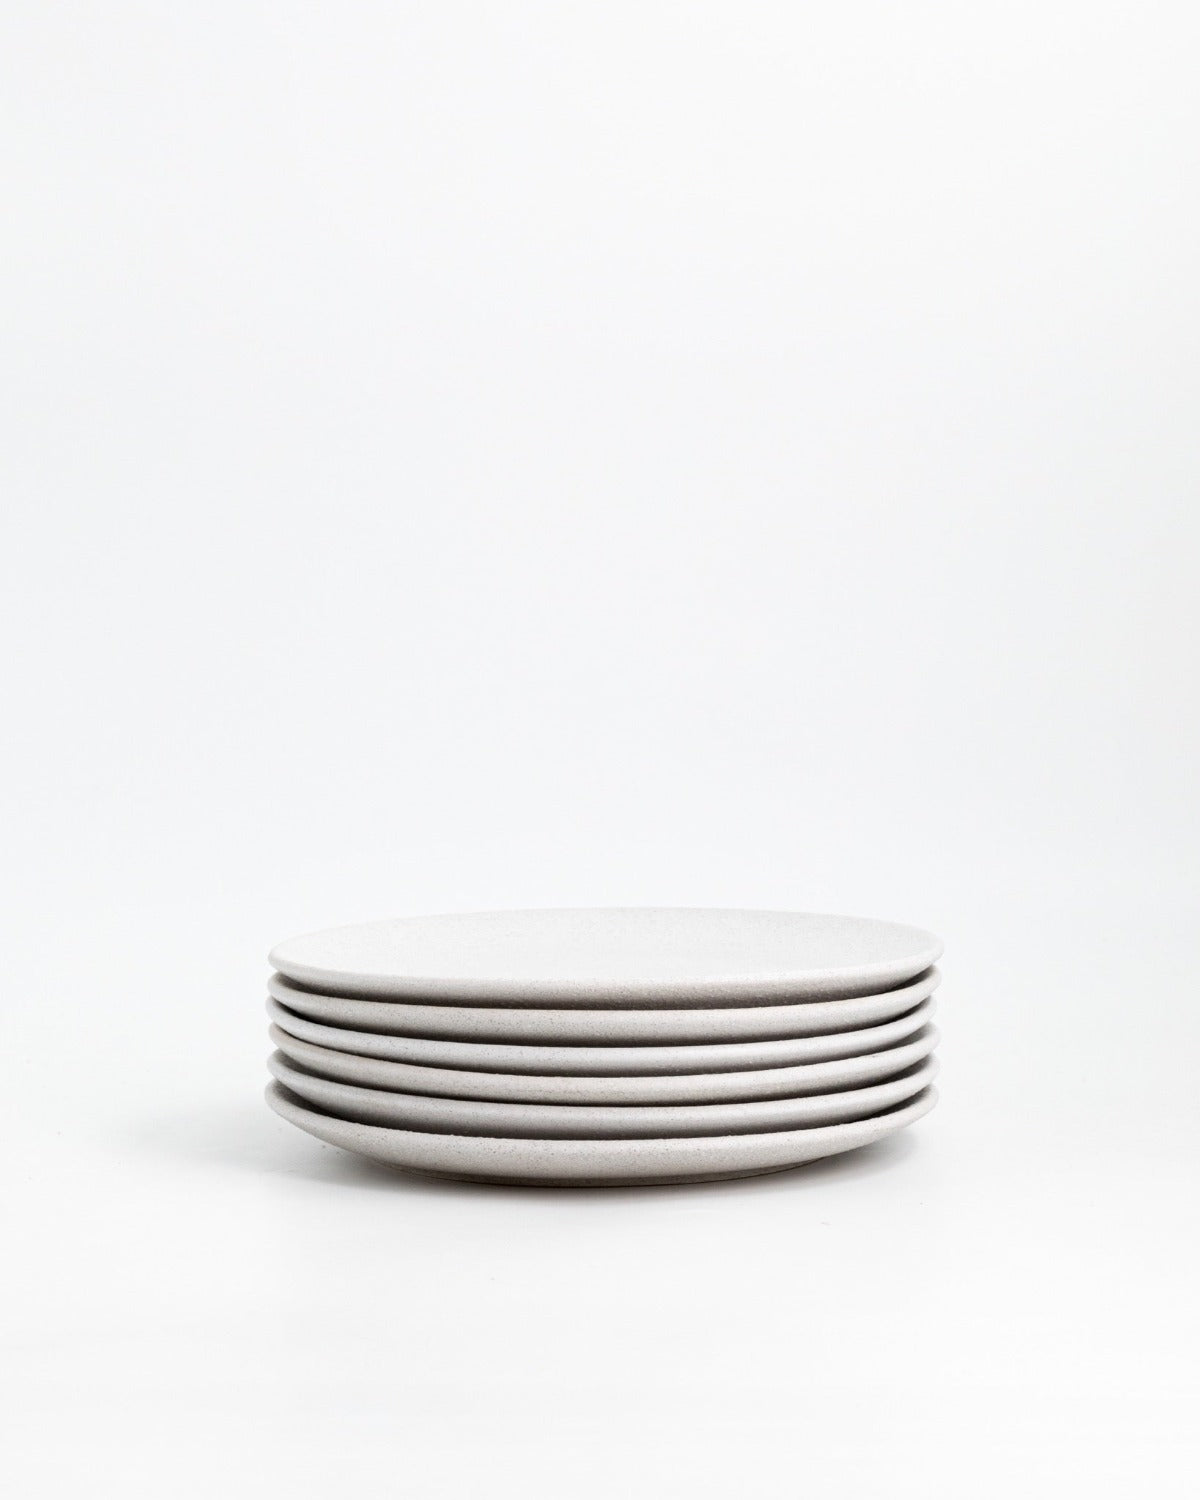 Farrago Plate Rough Grey/21cm 